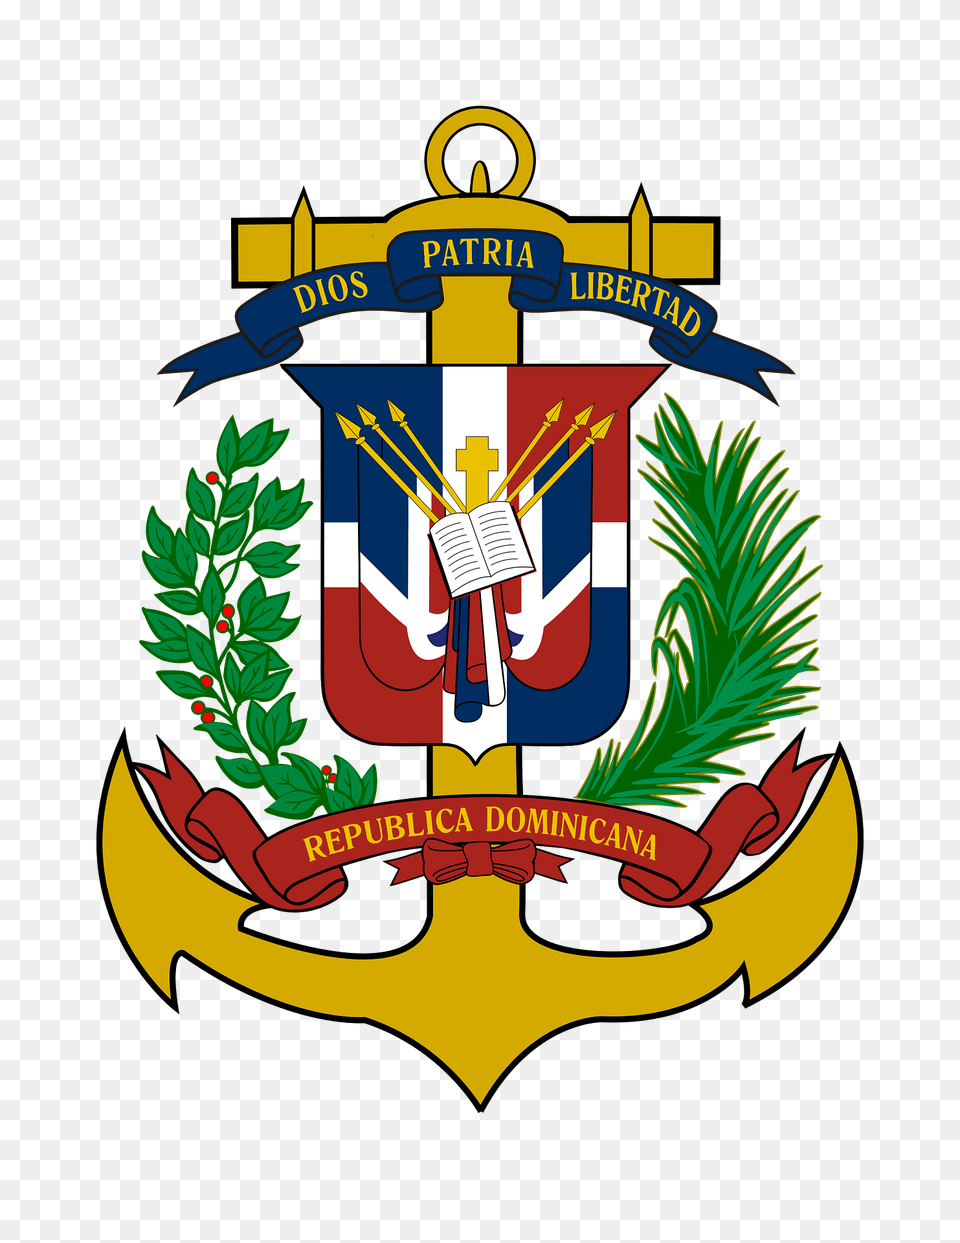 Emblema De La Marina De Guerra Dominicana Clipart, Electronics, Hardware, Emblem, Symbol Free Png